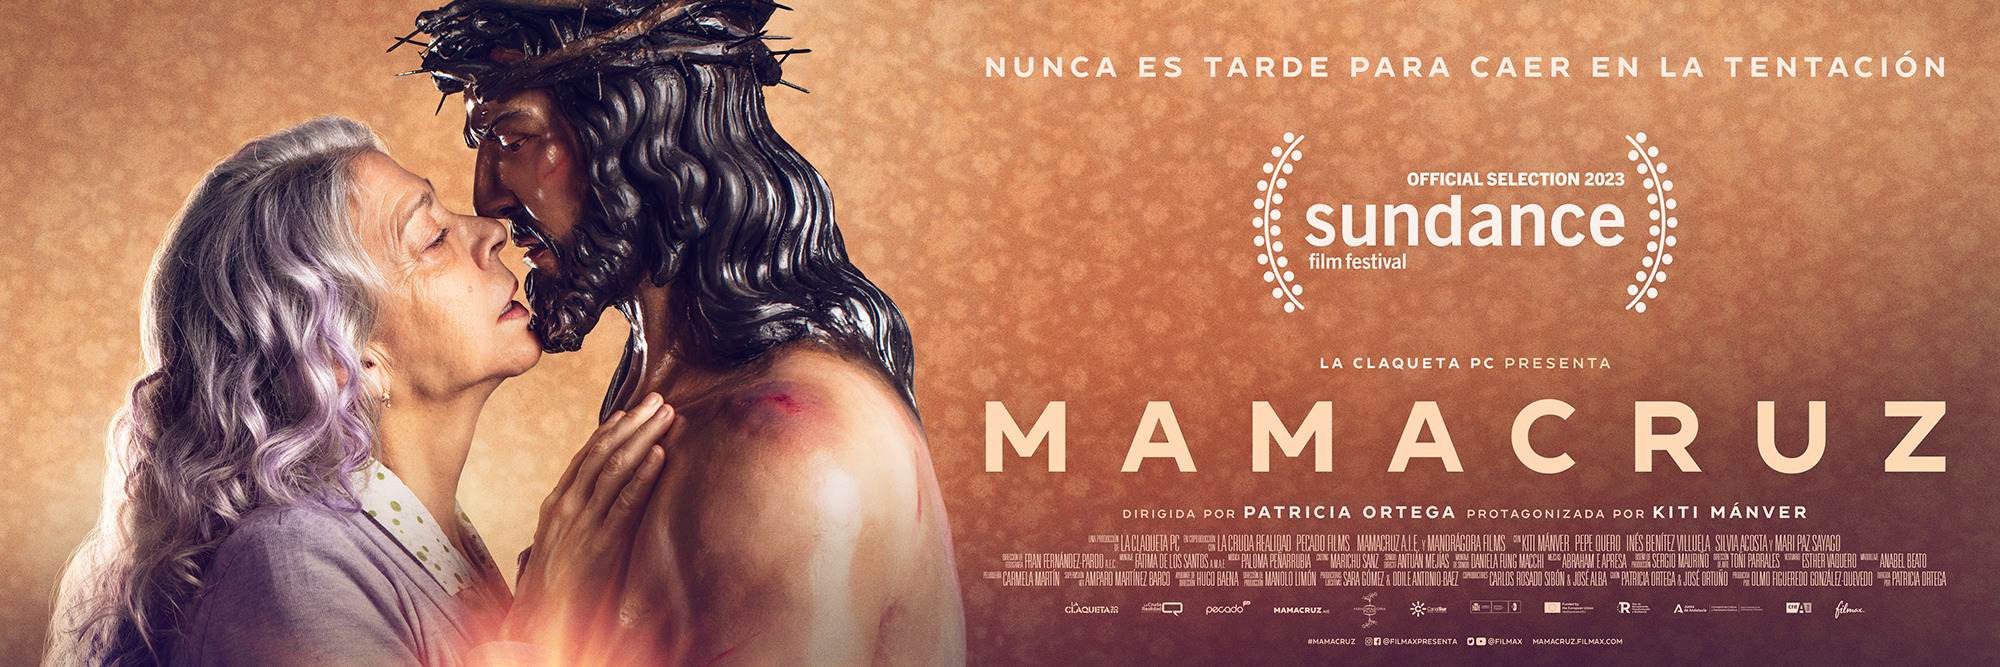 Mega Sized Movie Poster Image for Mamacruz (#2 of 4)